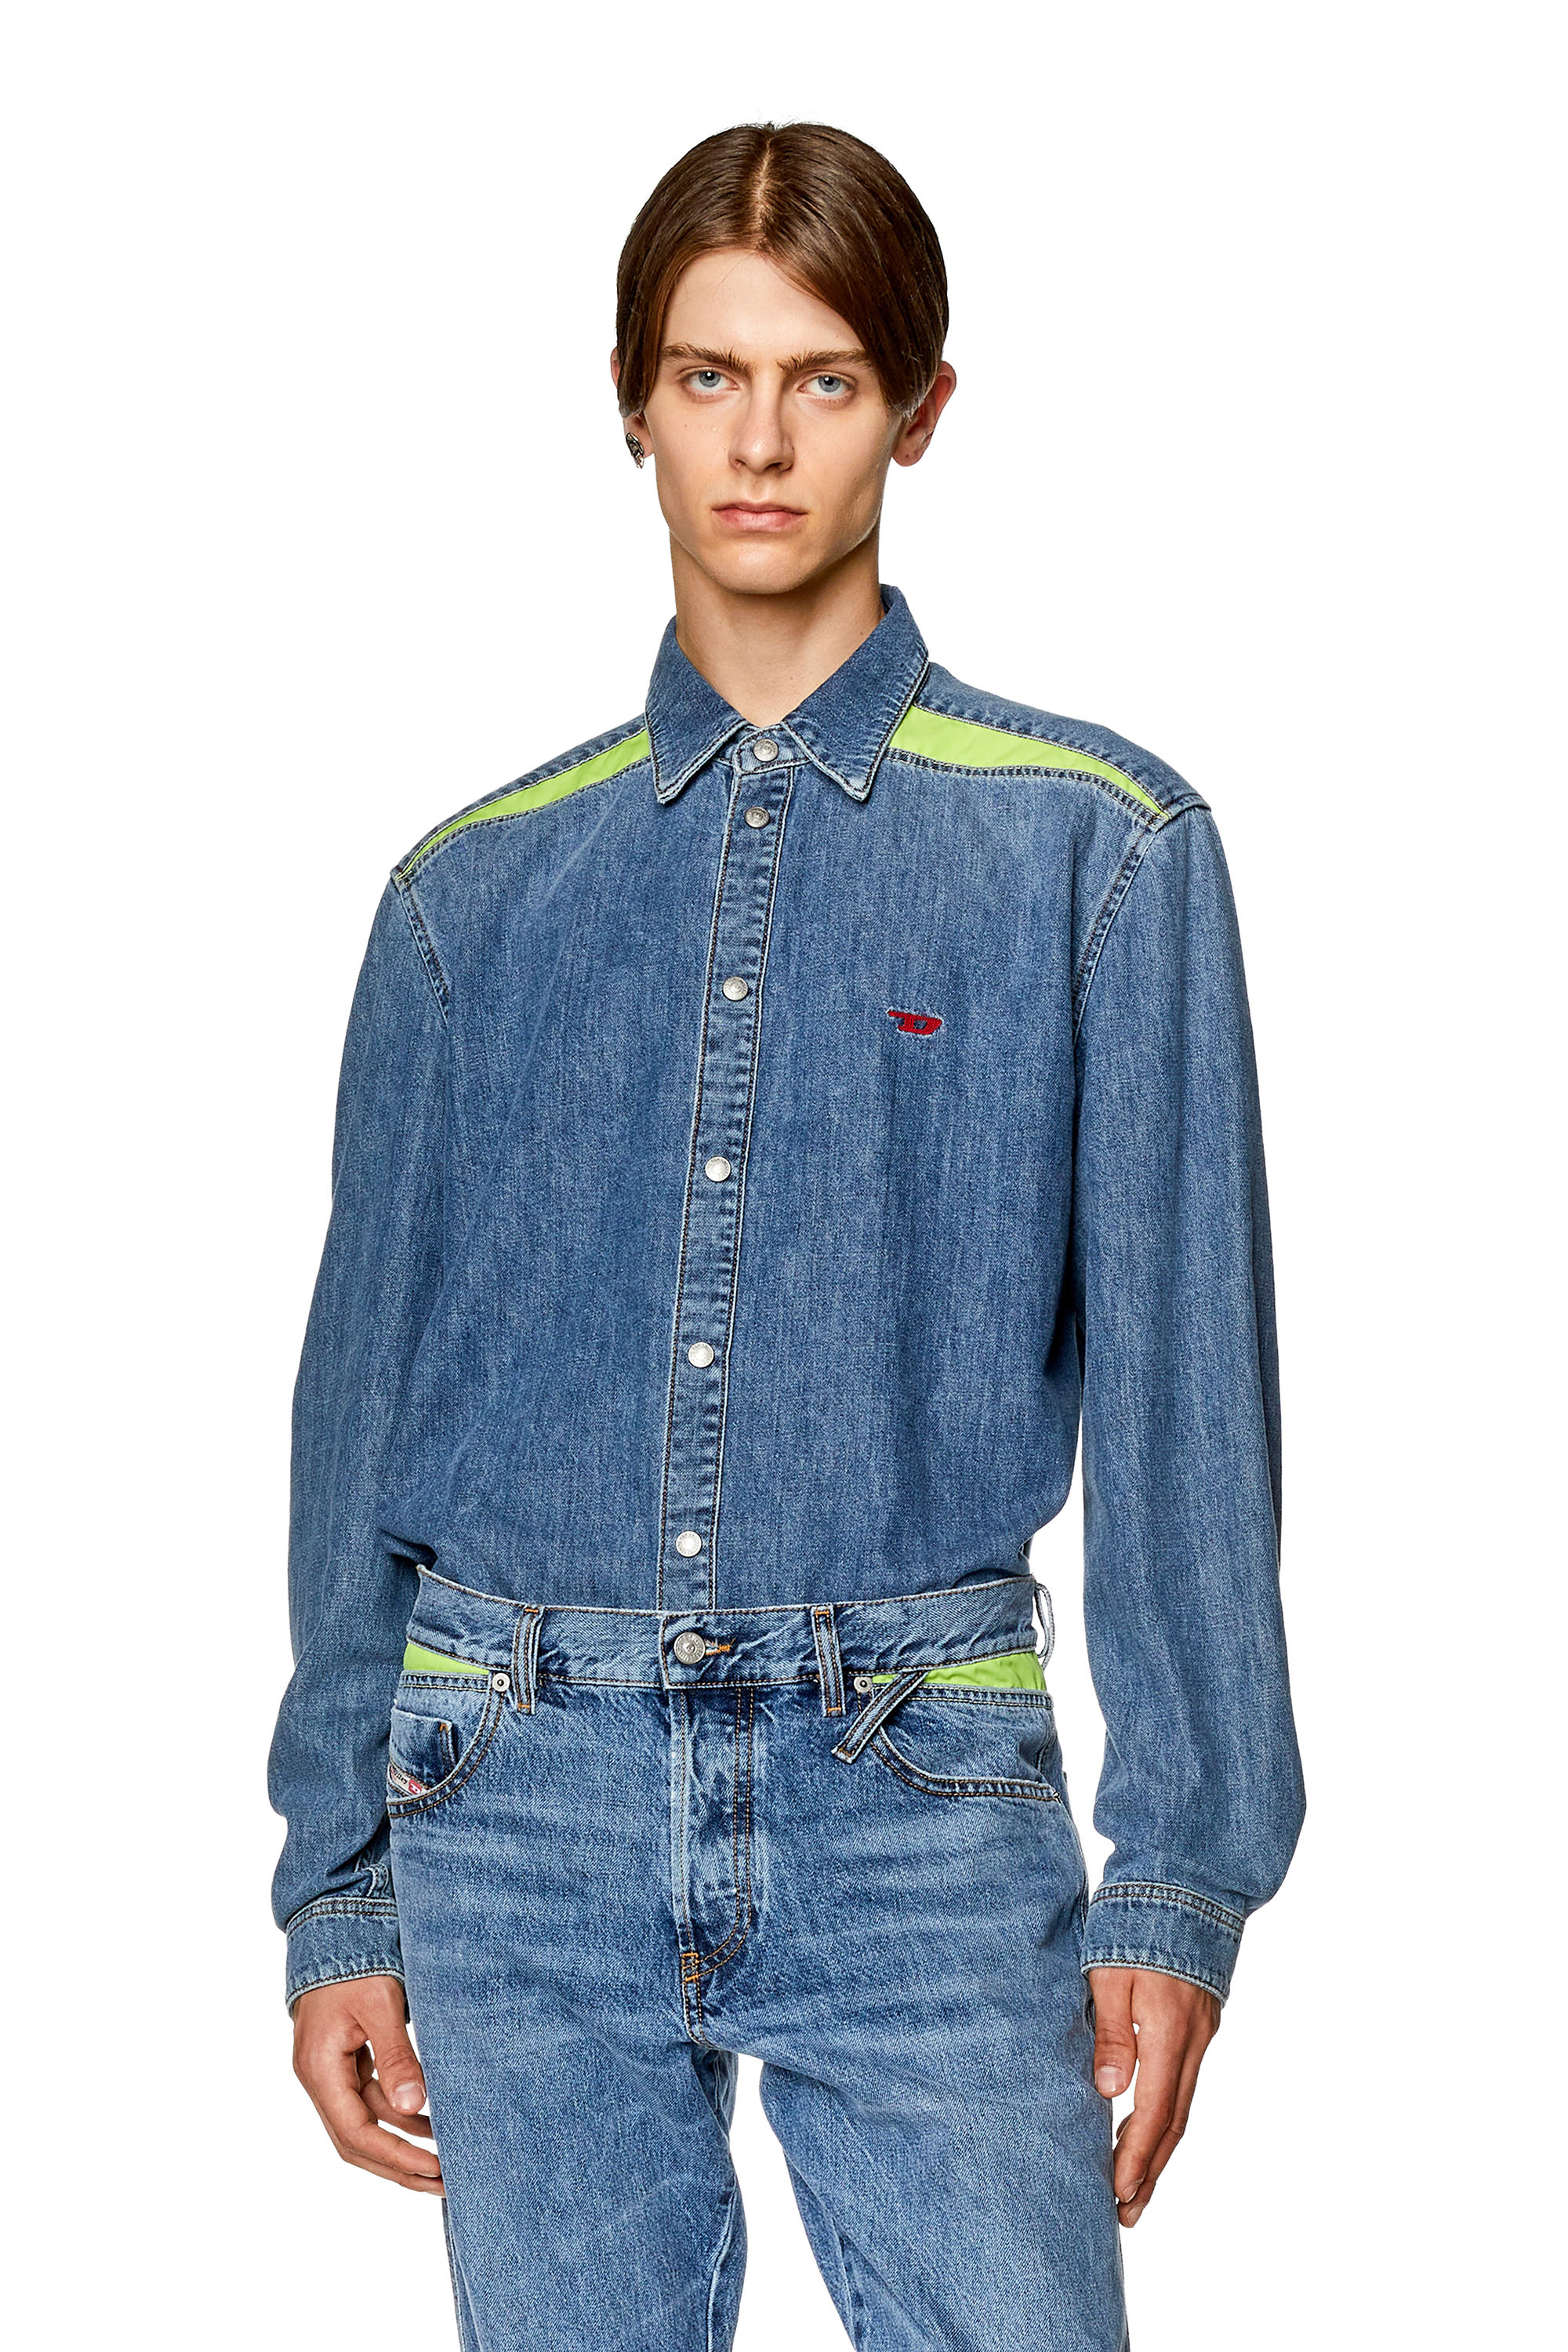 Diesel - Shirt aus Denim mit Kontrastdetails - Denimhemden - Herren - Blau